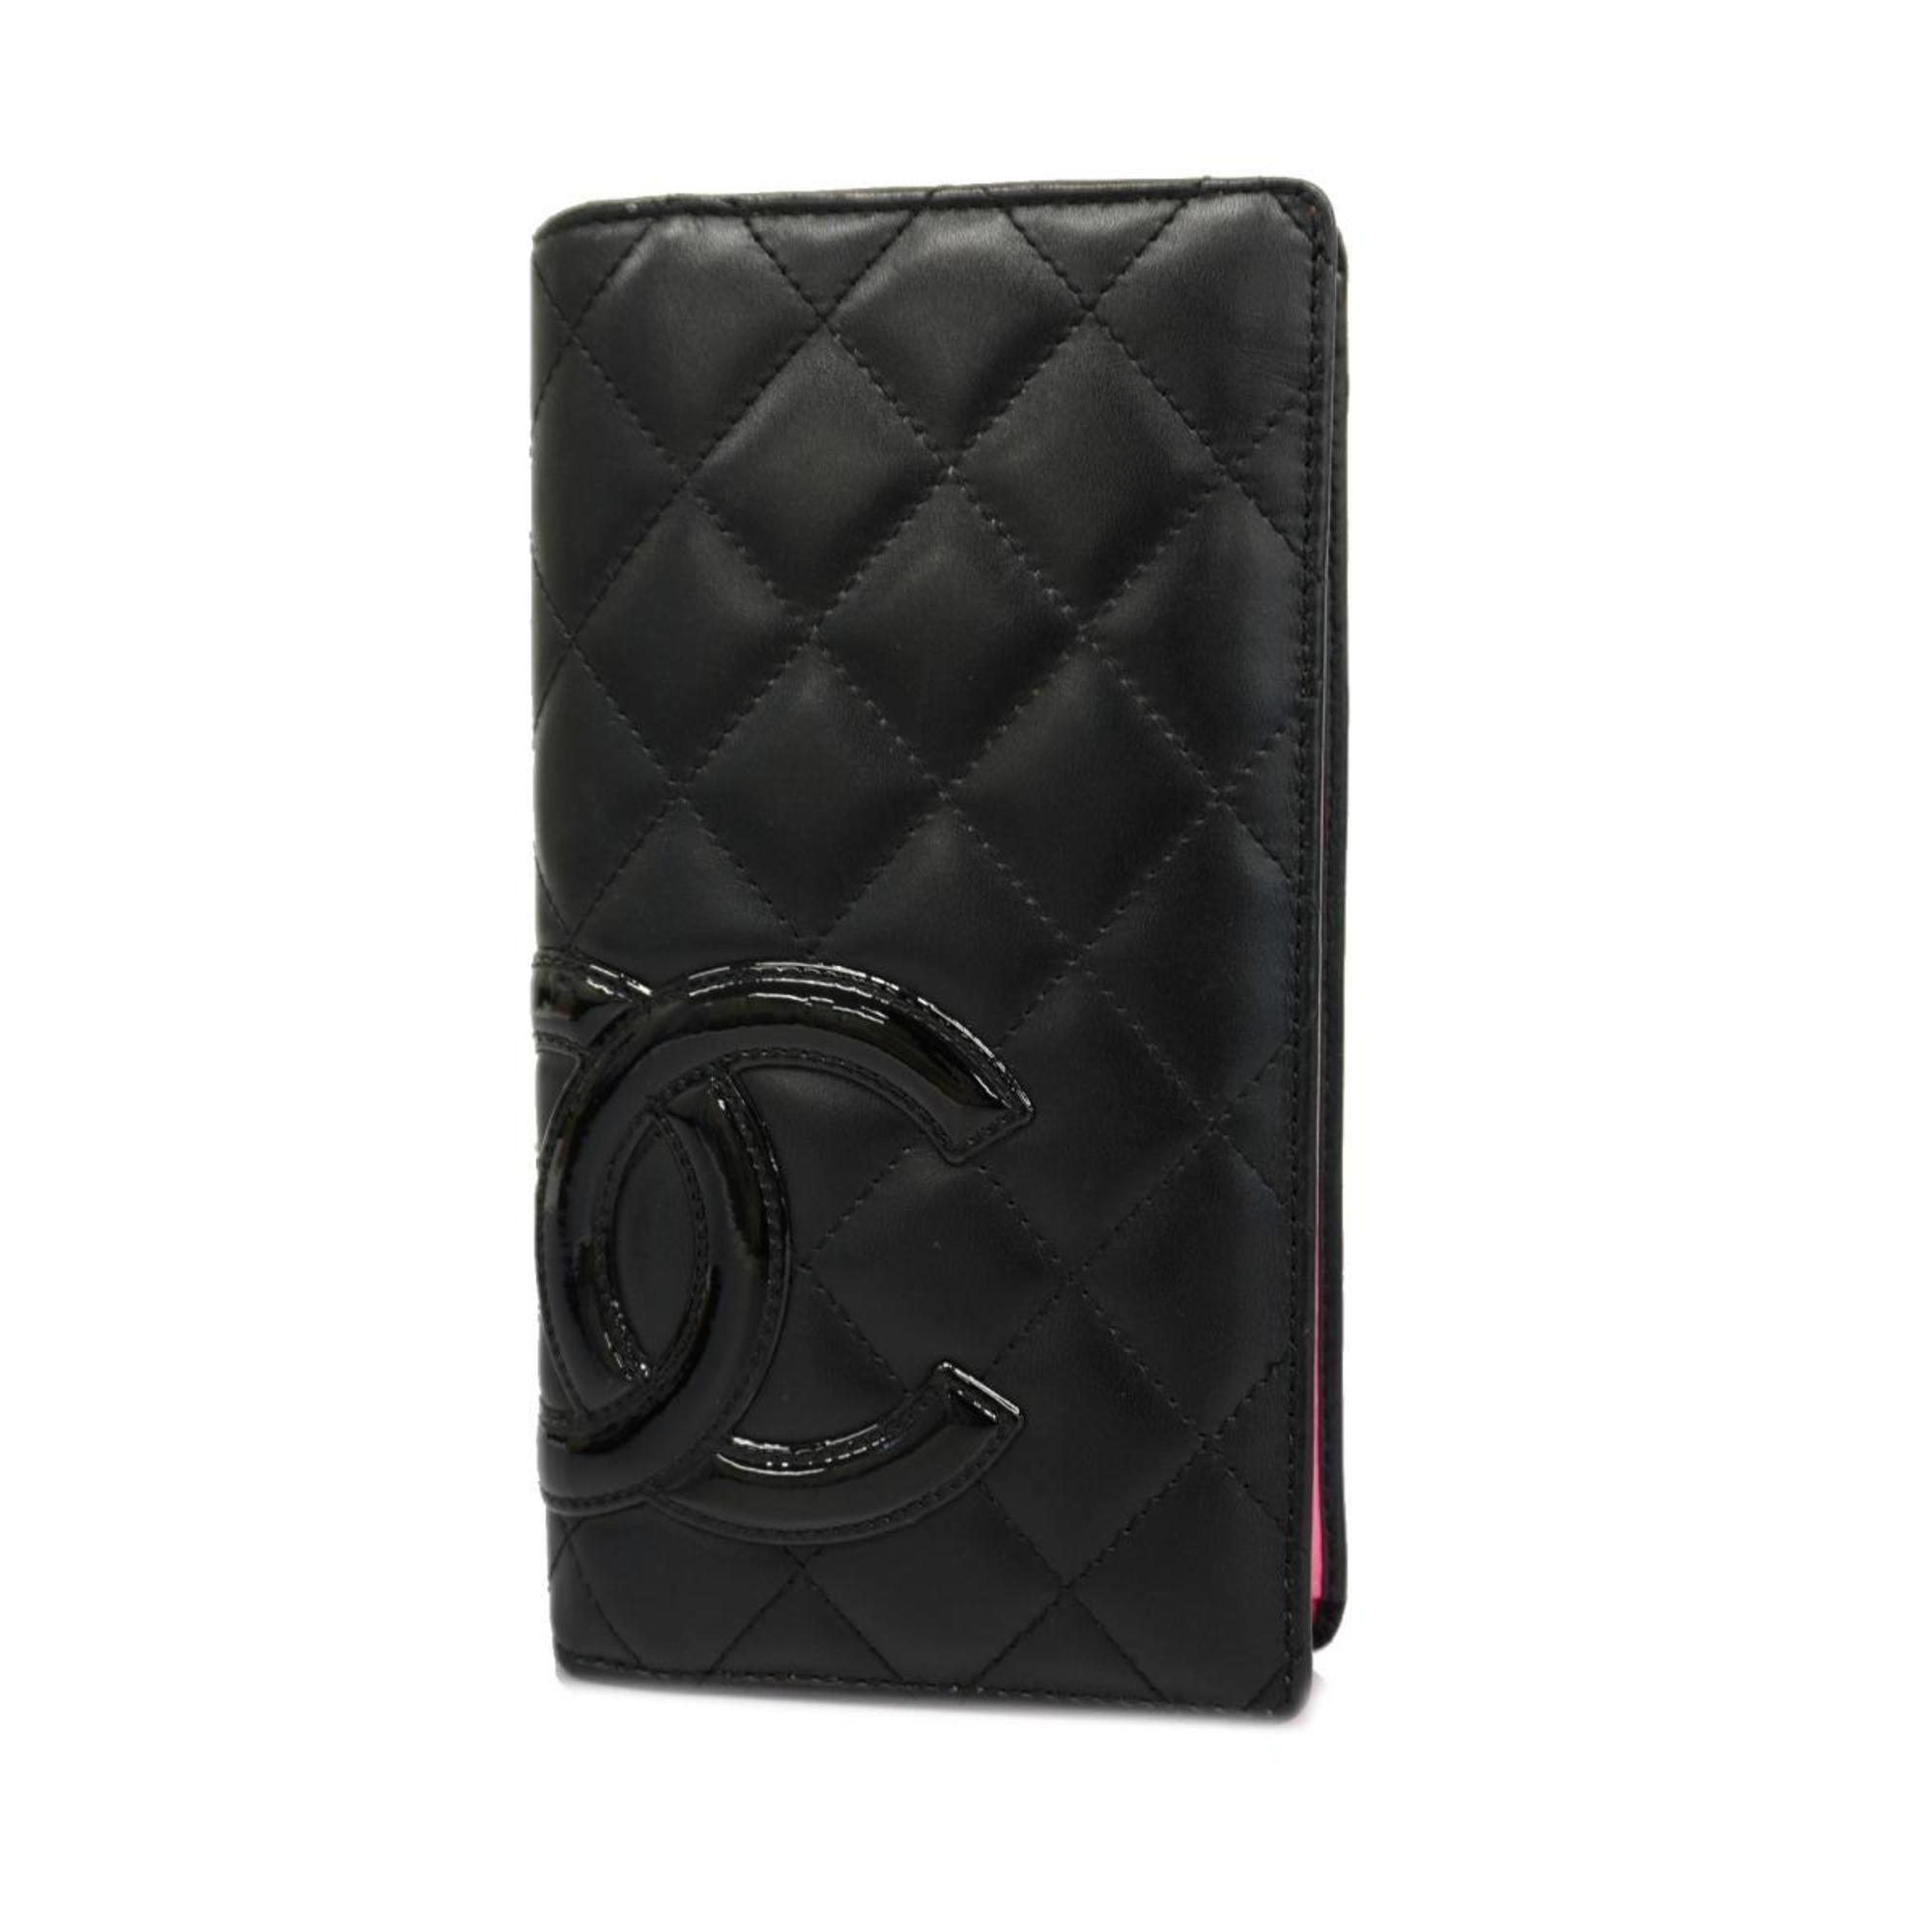 Chanel Long Wallet Cambon Lambskin Black Pink Women's